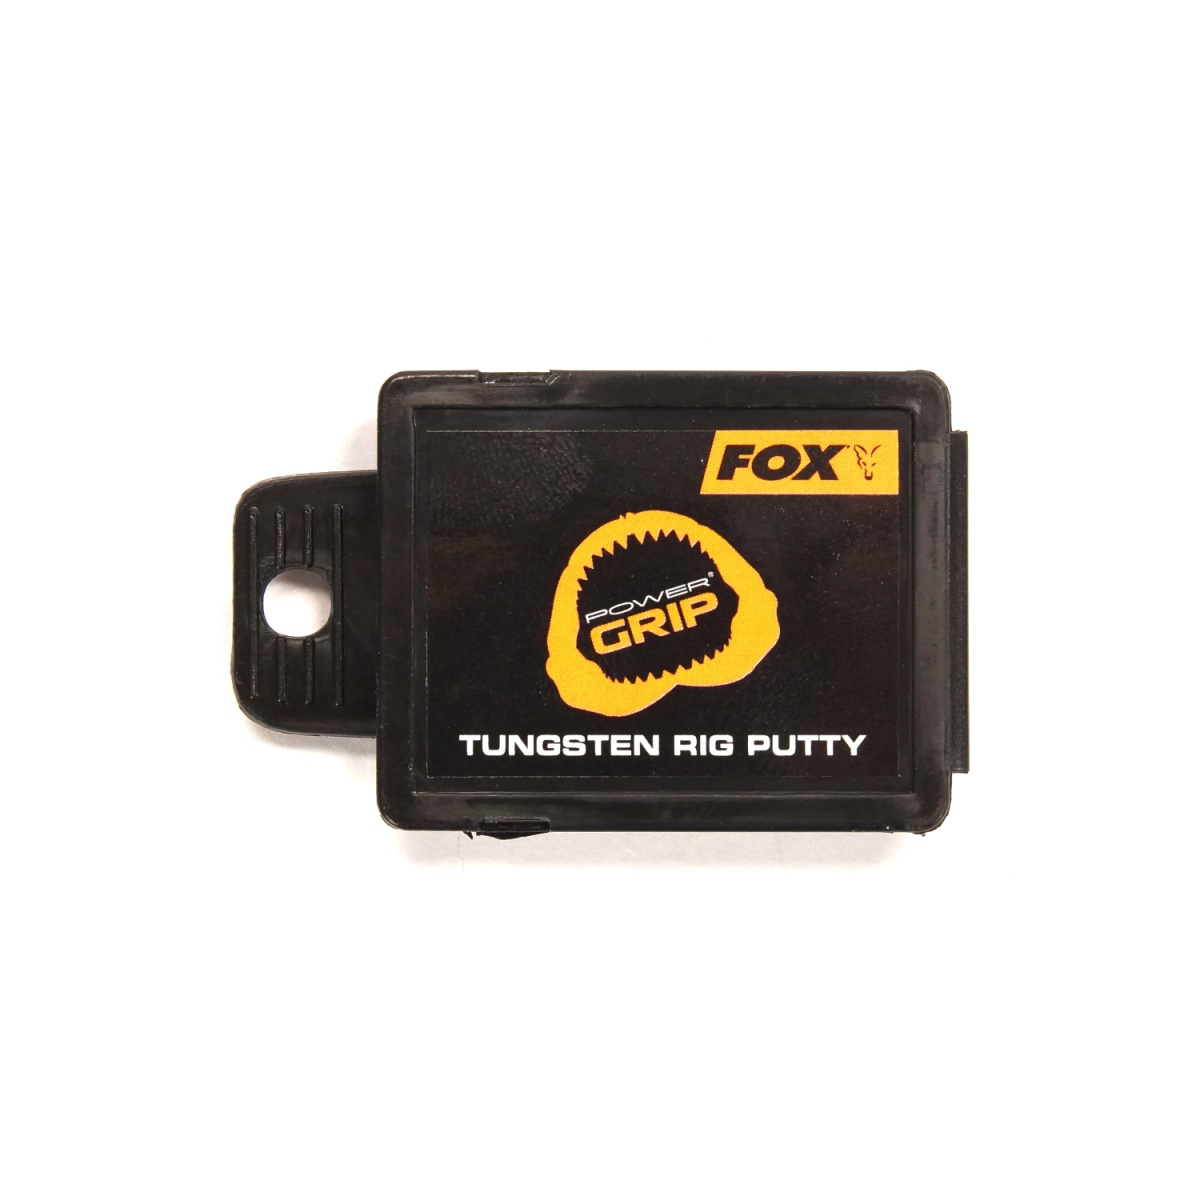 Fox Power Grip Tungsten Putty  